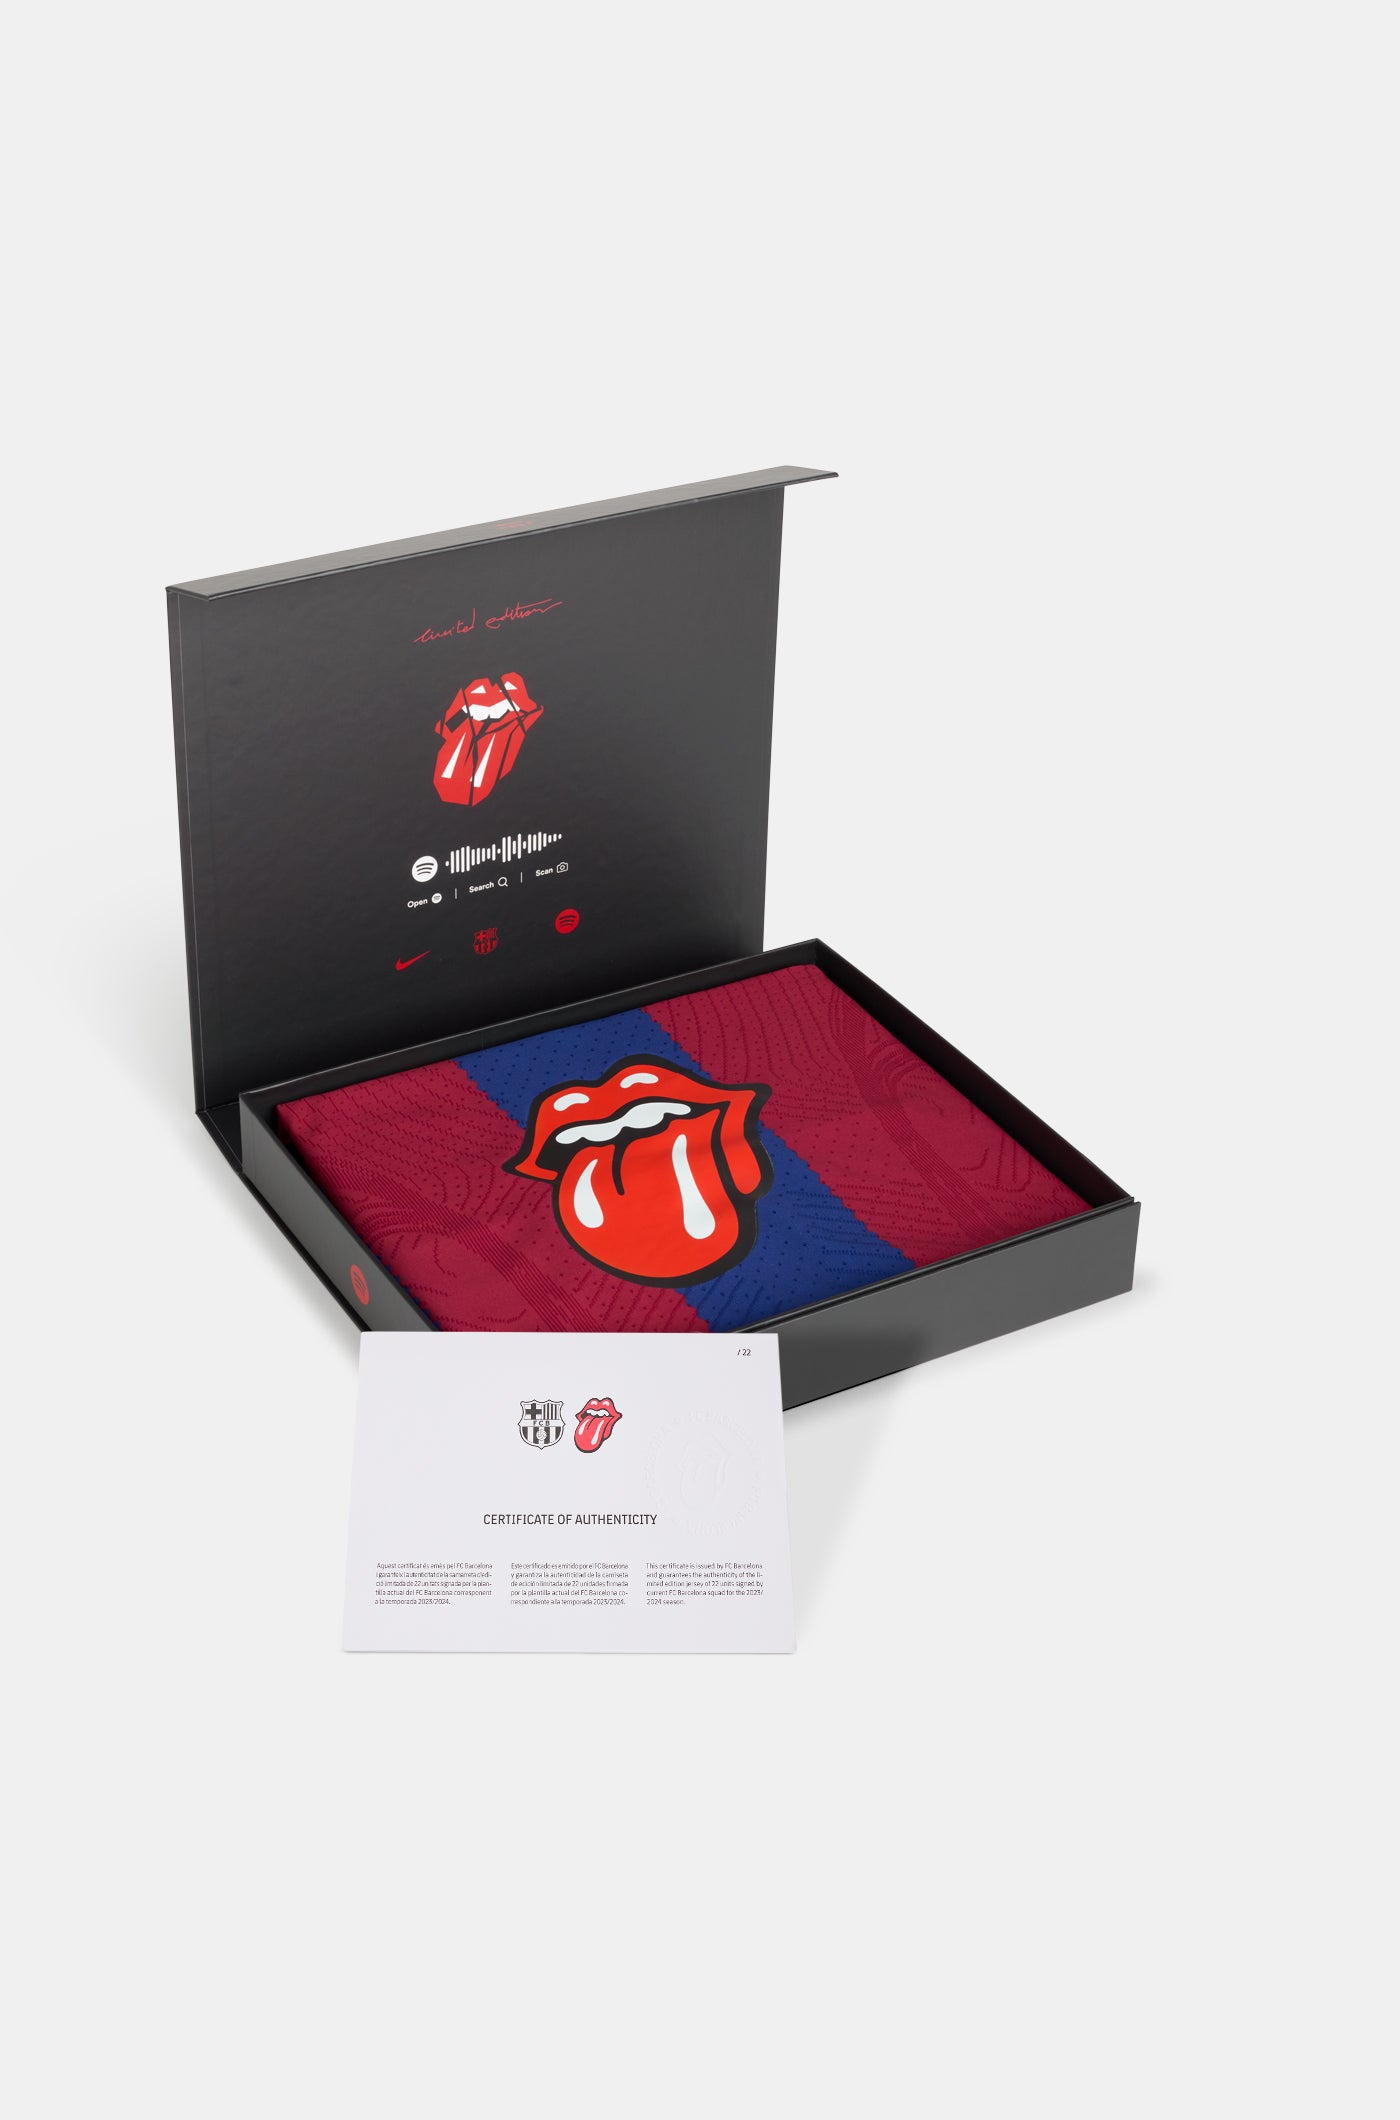 La camiseta del Barcelona con los Rolling Stones sale a la venta